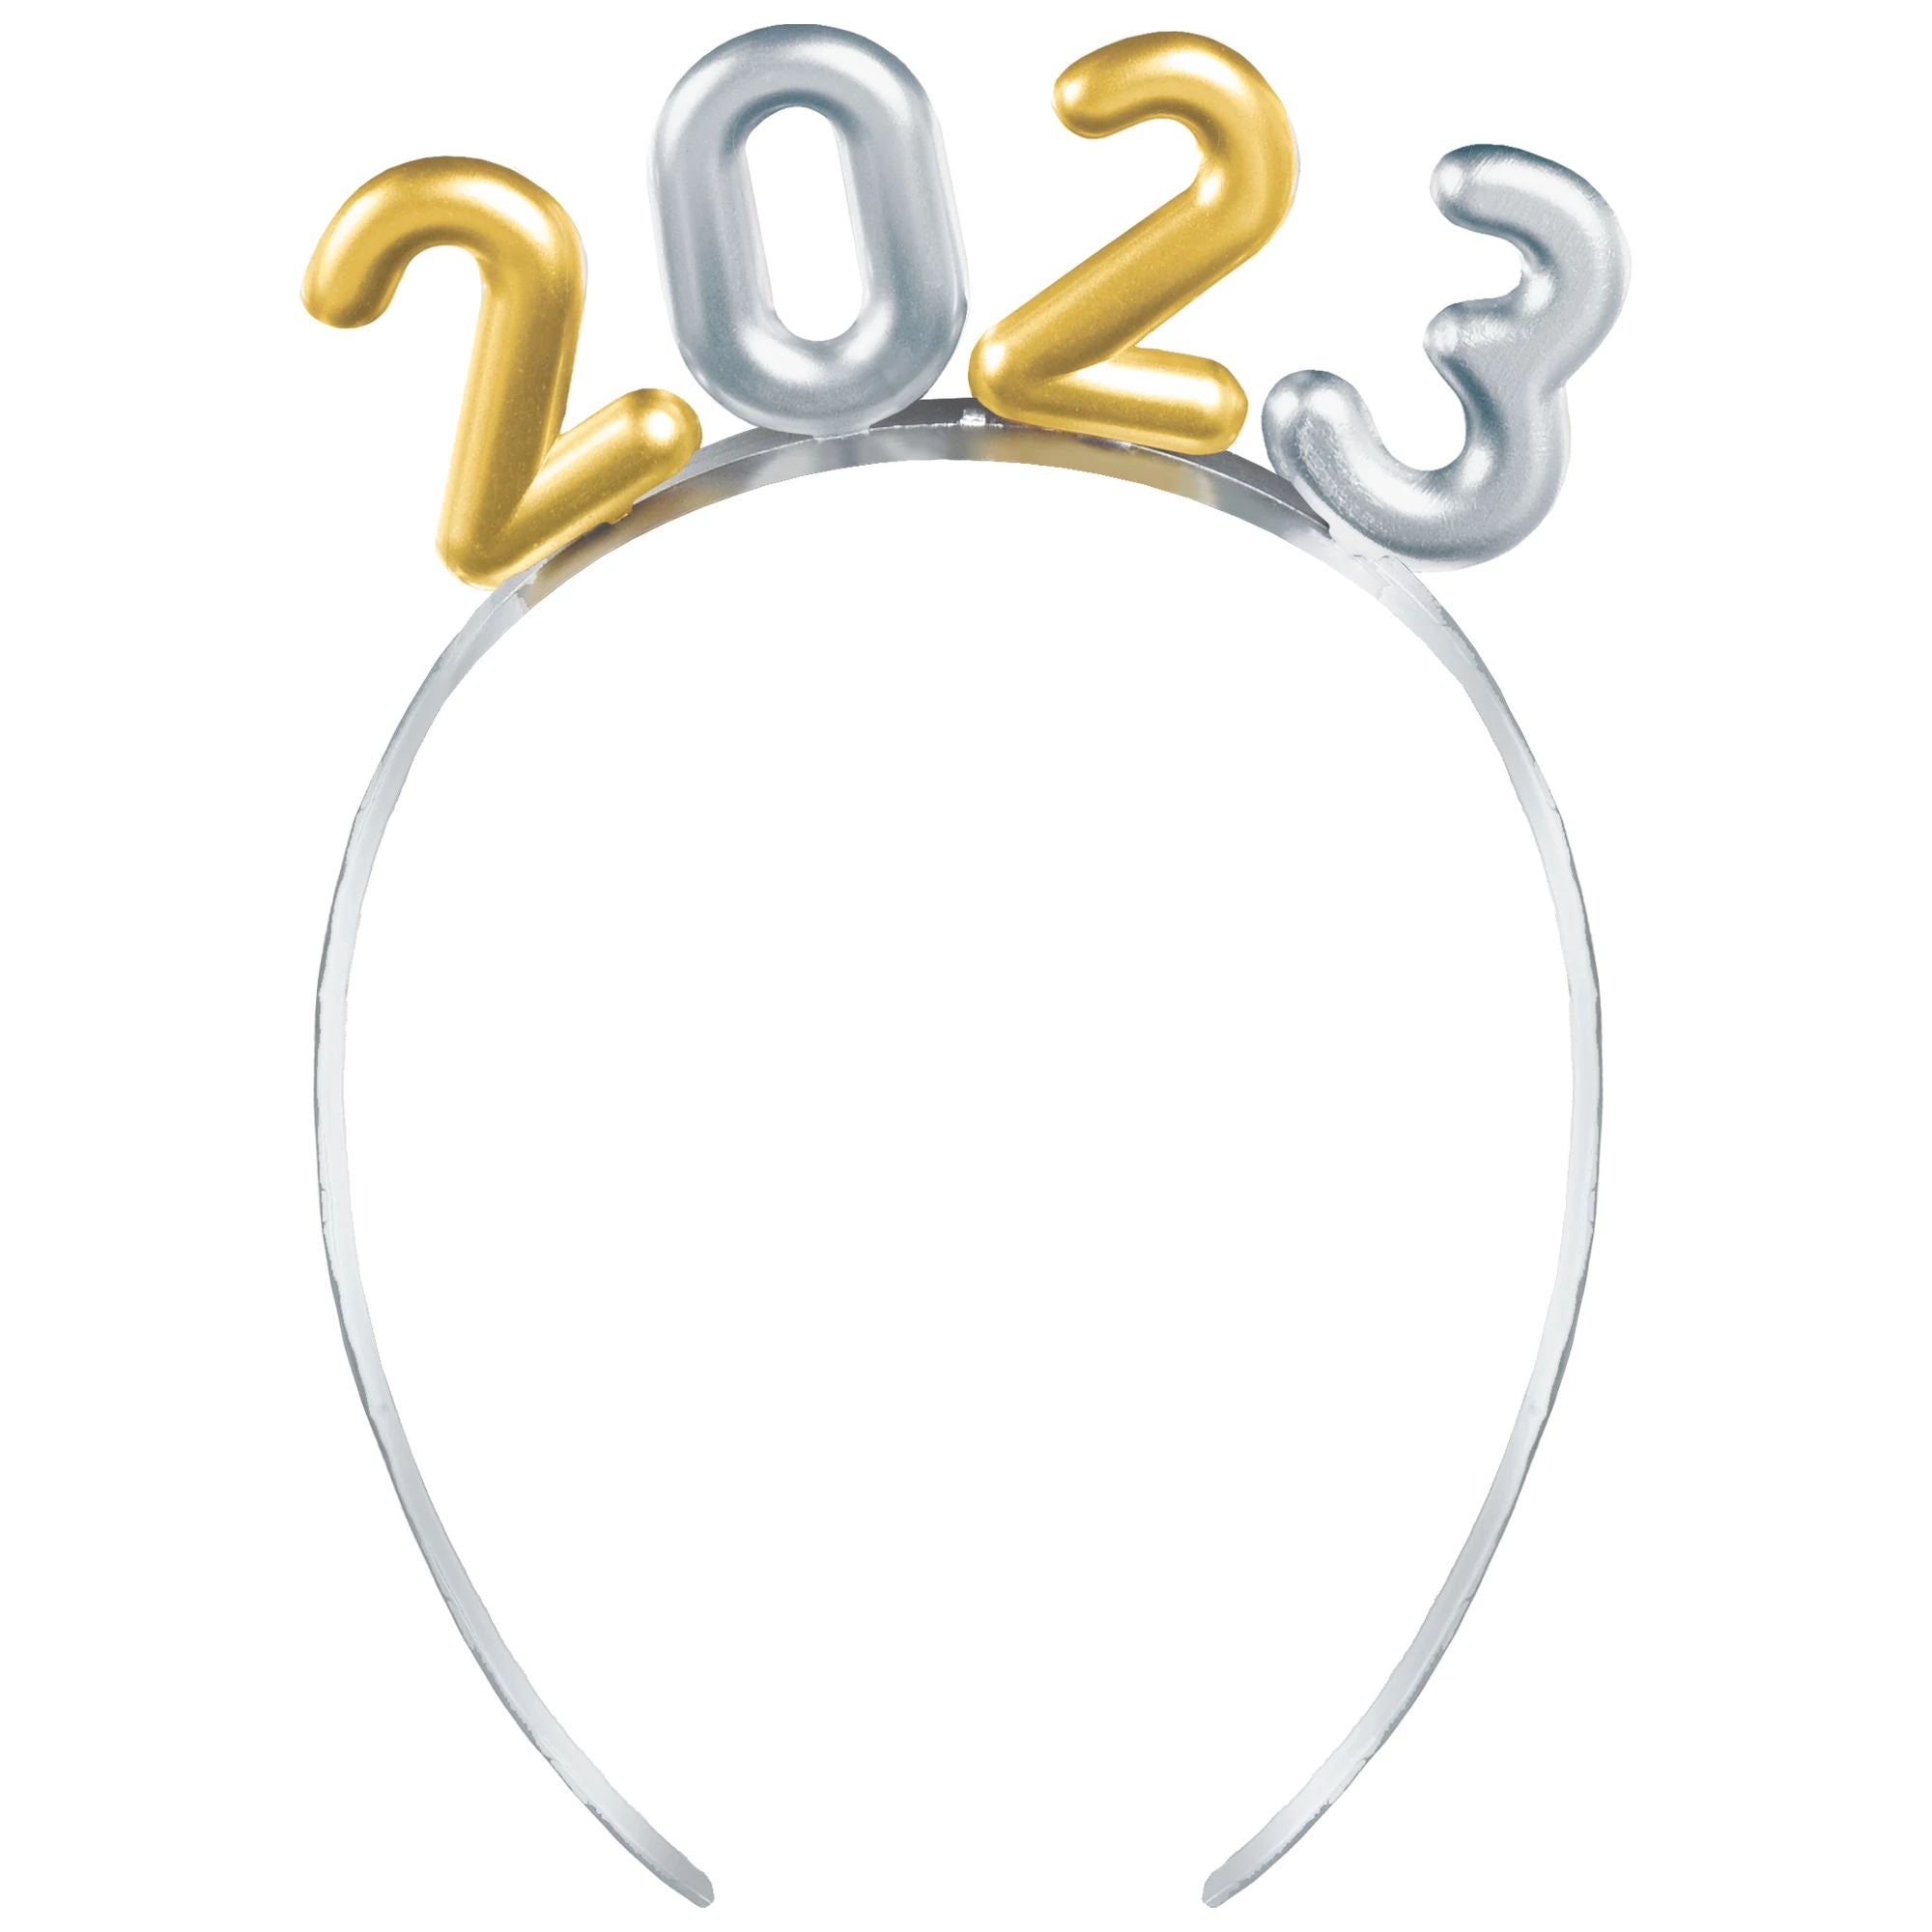 2023 Balloon Numbers Headband